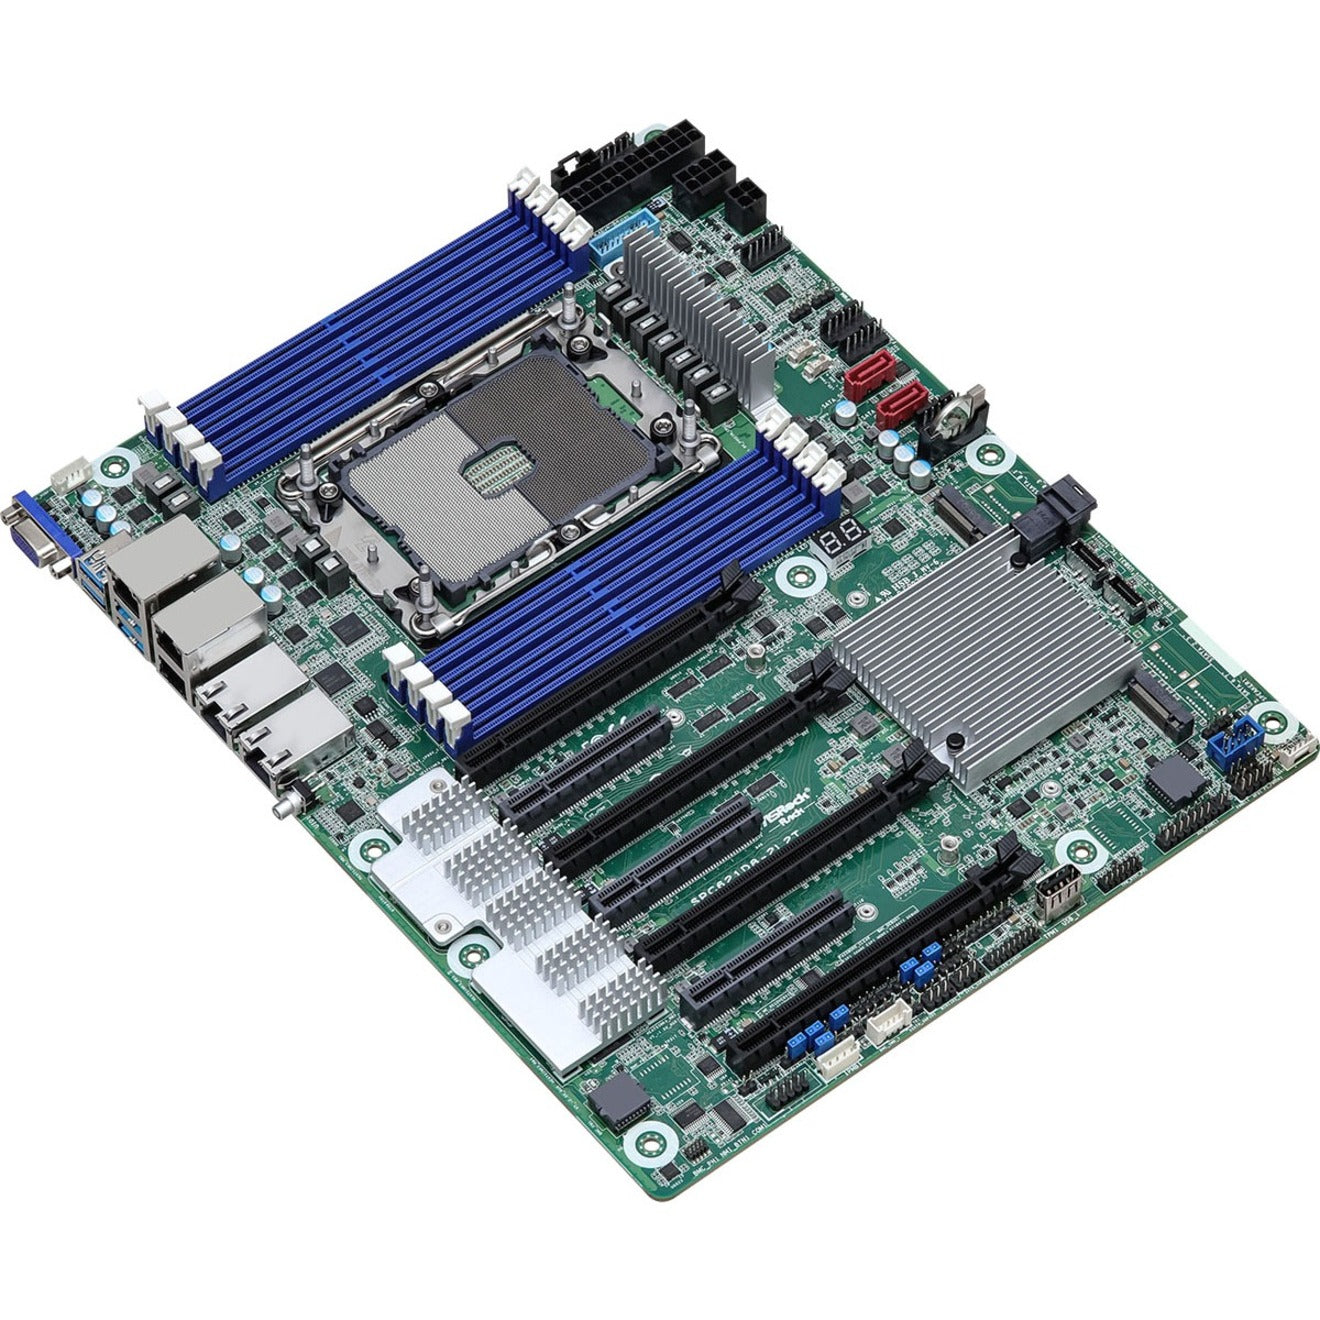 ASRock SPC621D8-2L2T Server Motherboard - Intel C621A Chipset - Socket LGA-4189 - ATX